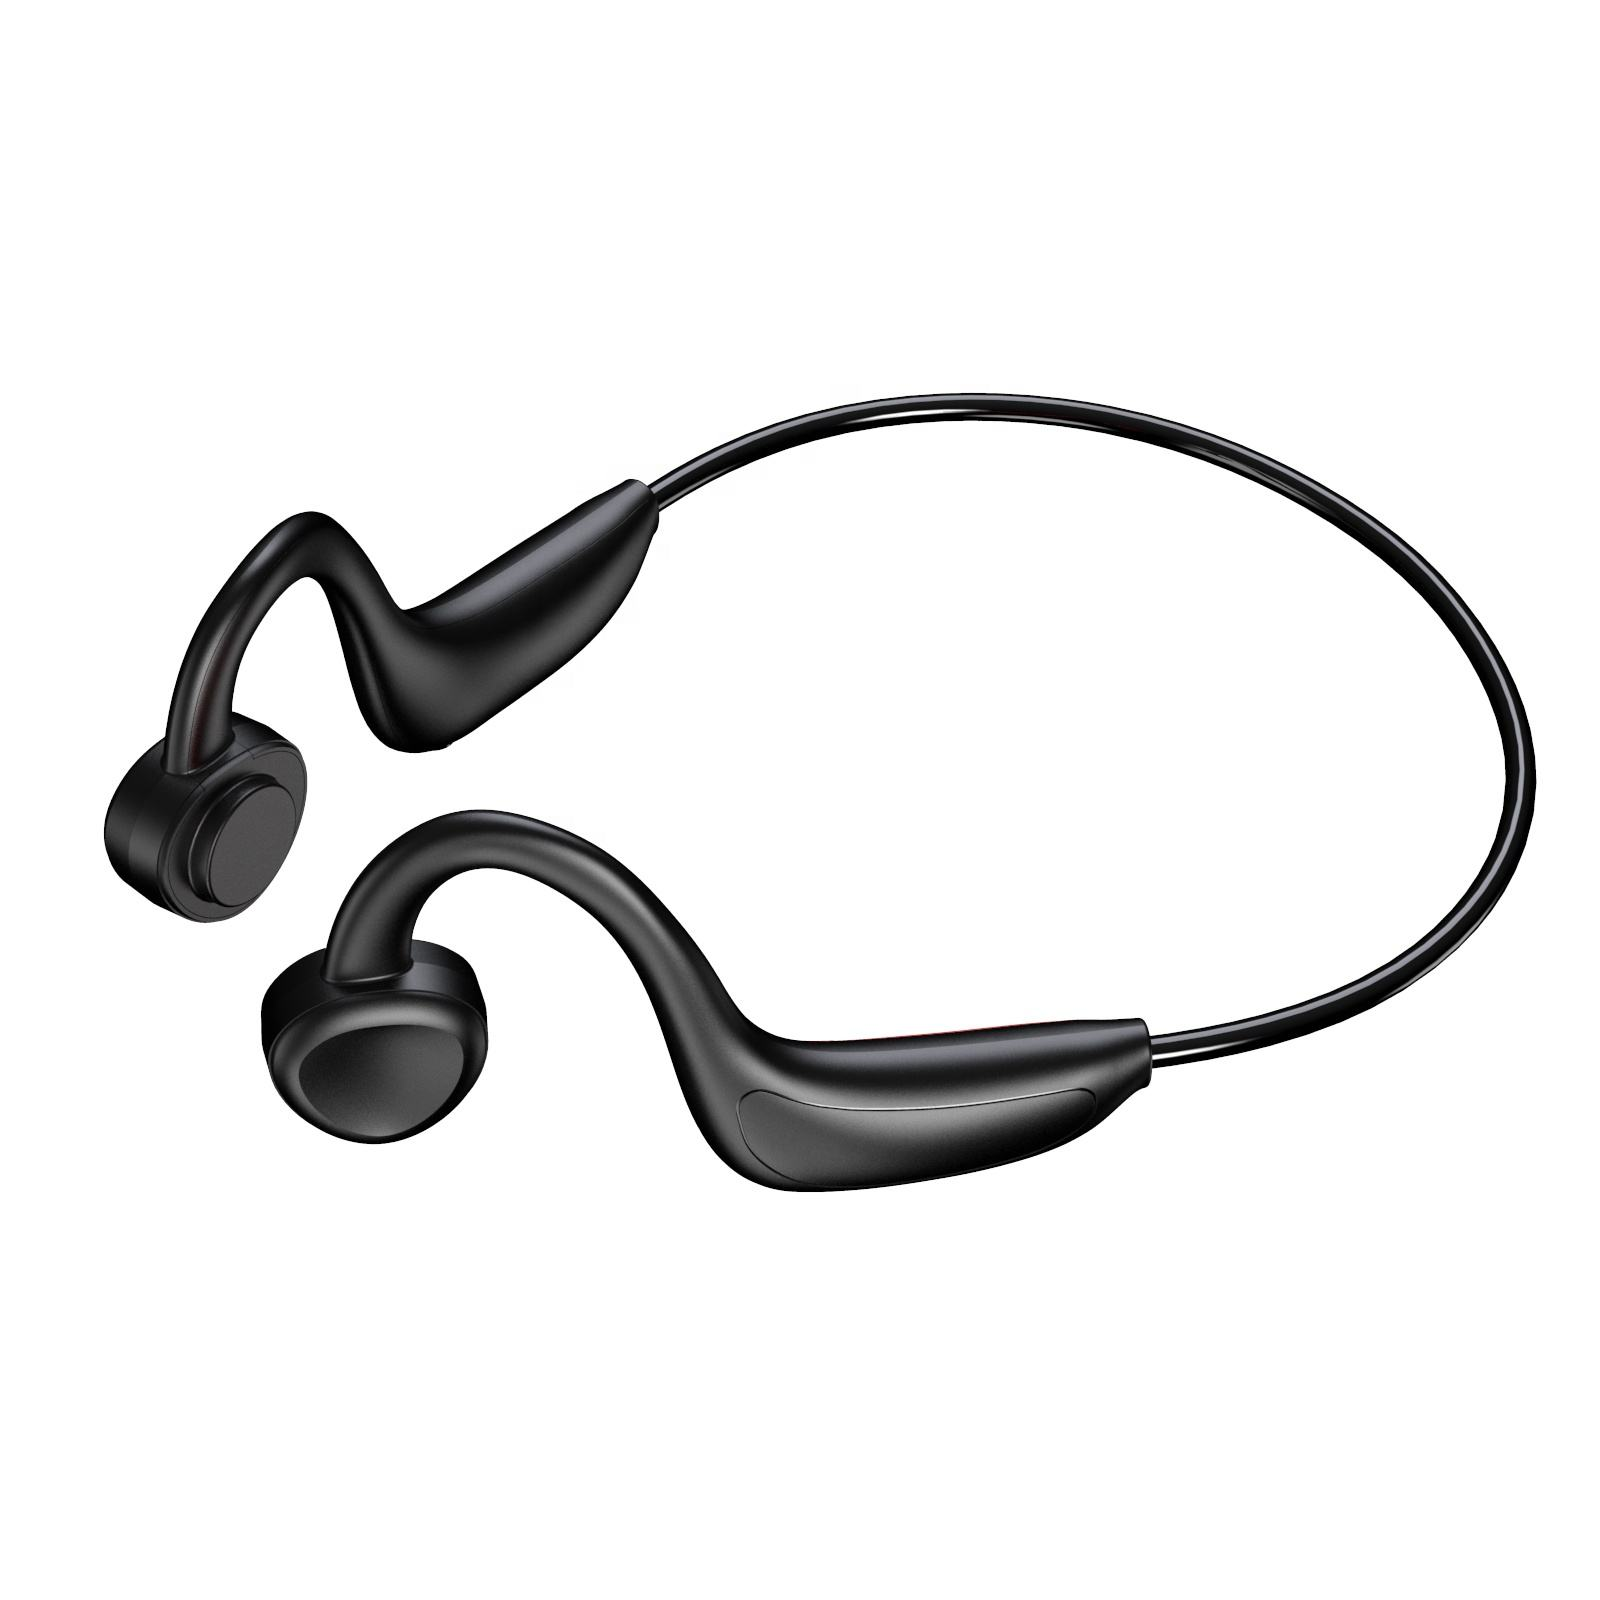 Kopfhörer Kopfhörer, offener Luftleitungs-Funkkopfhörer, schwarz INF Gehörschutz, In-ear